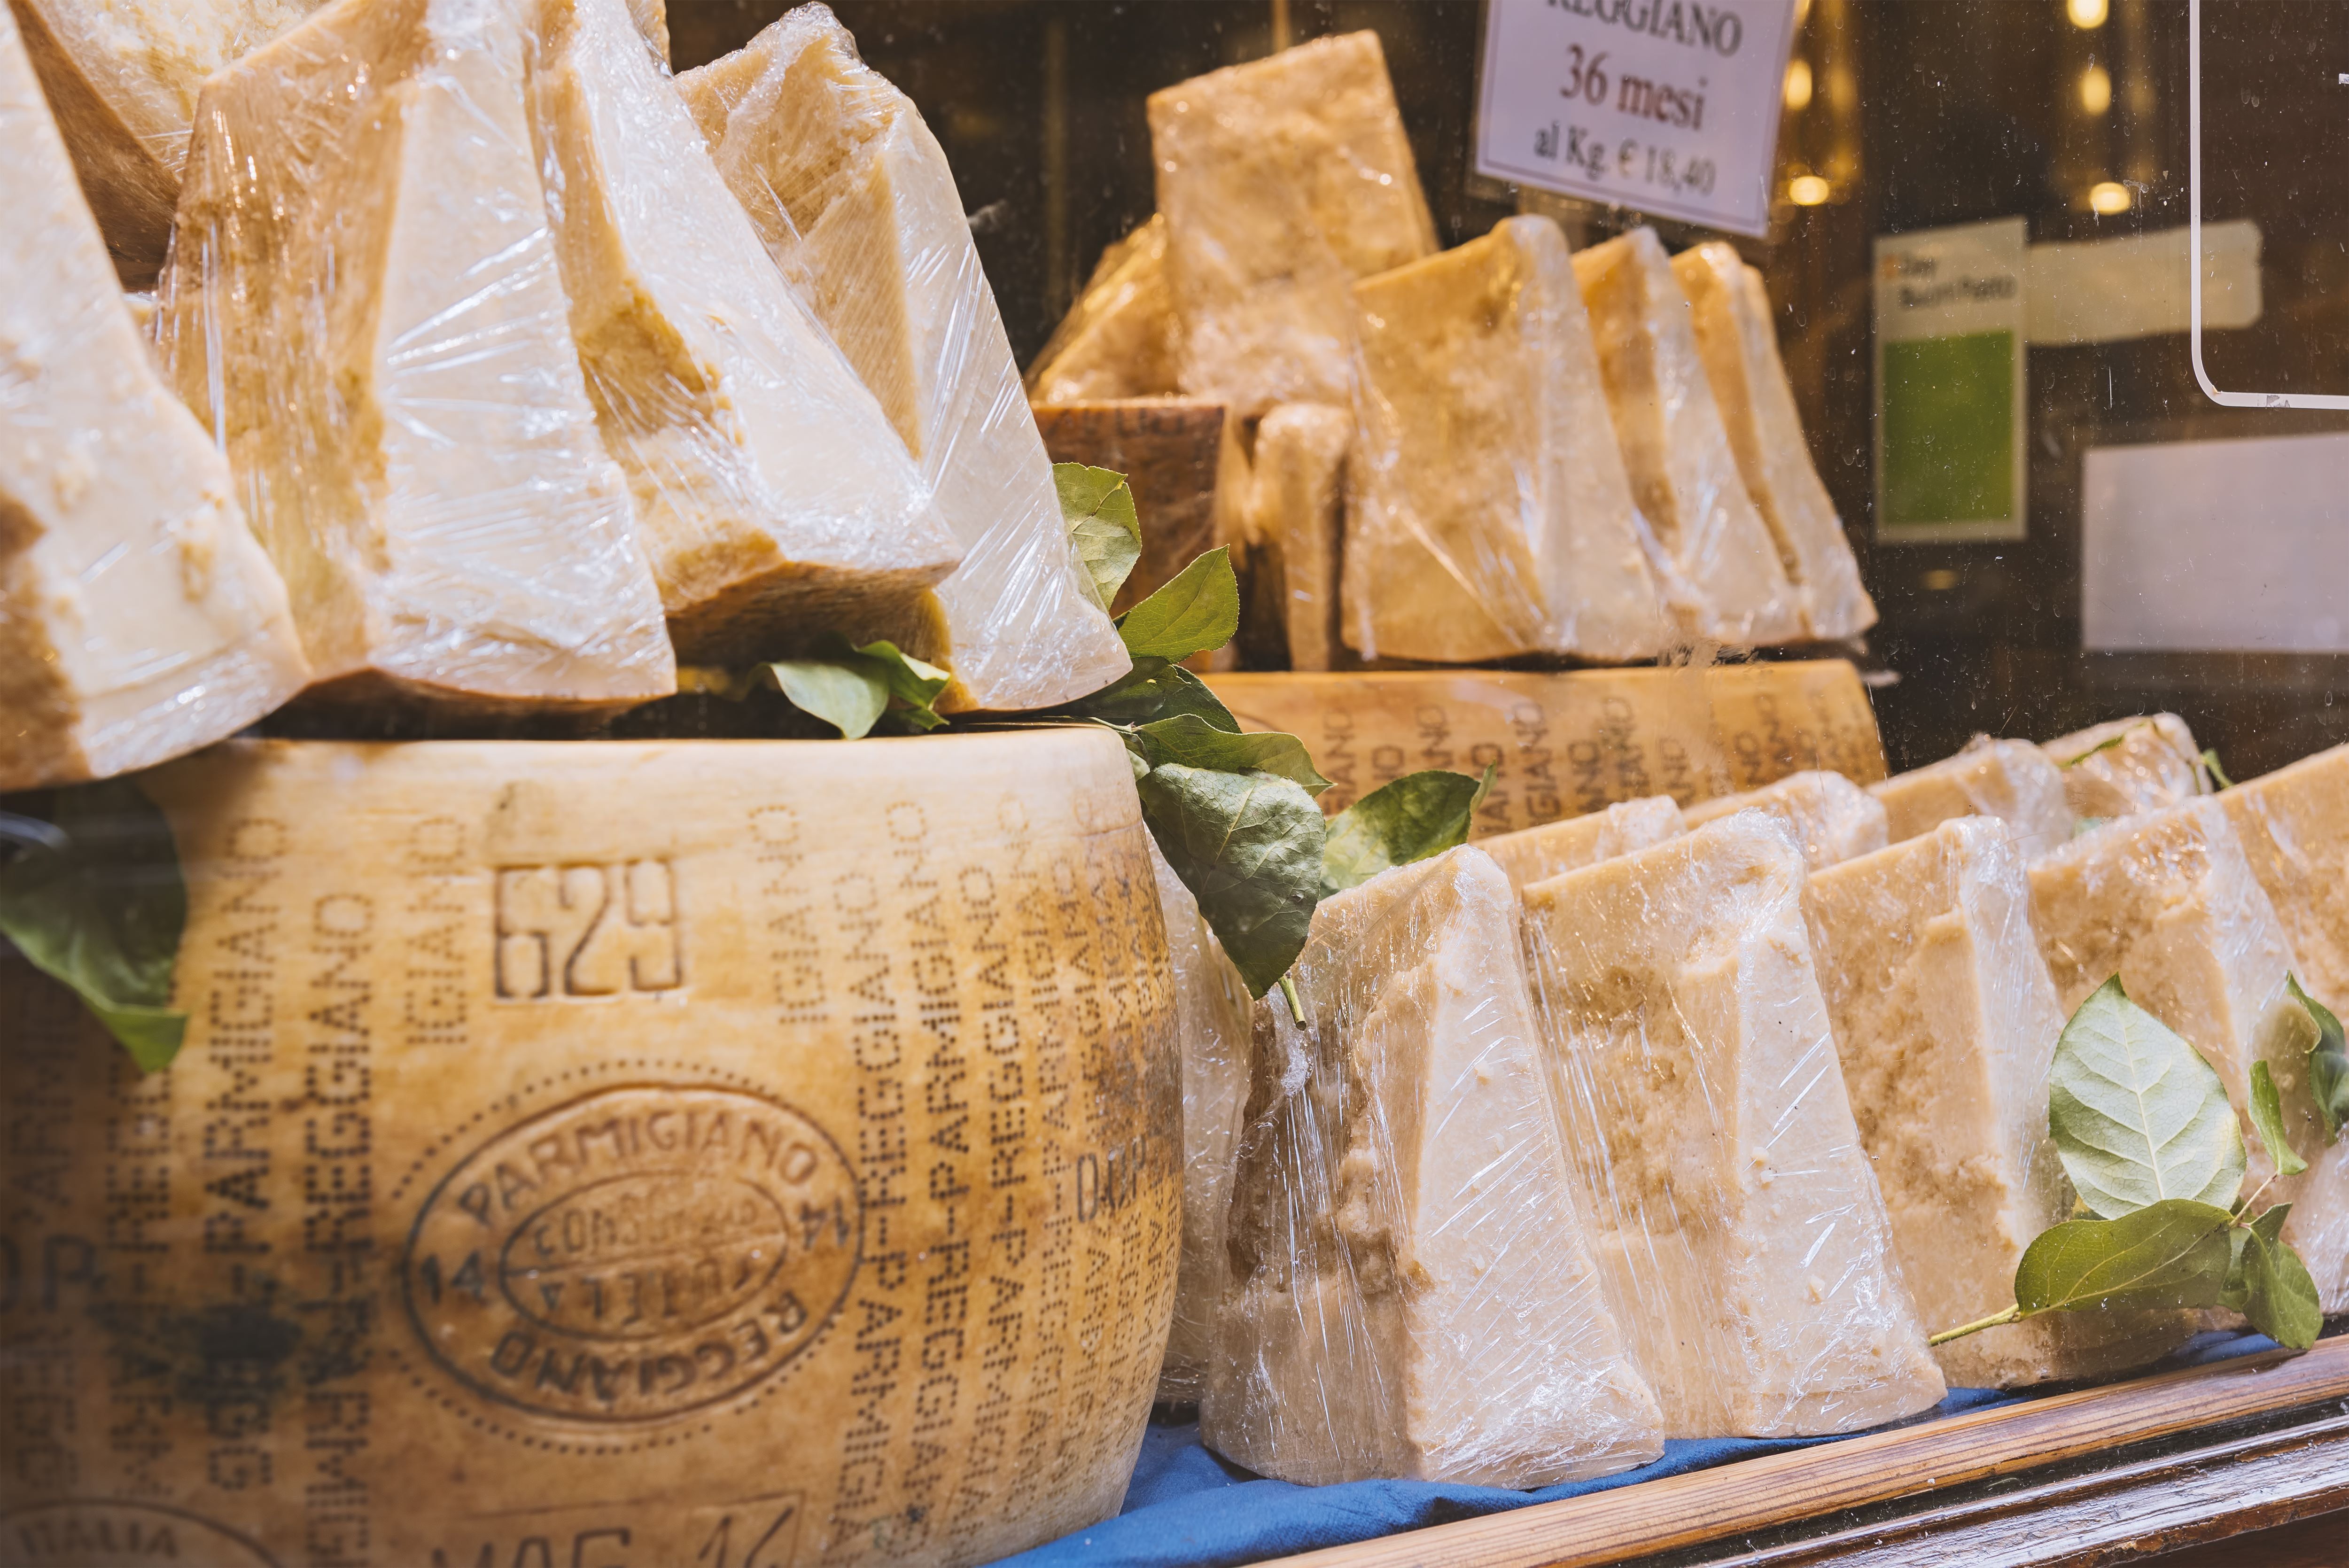 Fogyasztók tízezrei értékelték a világ sajtjait